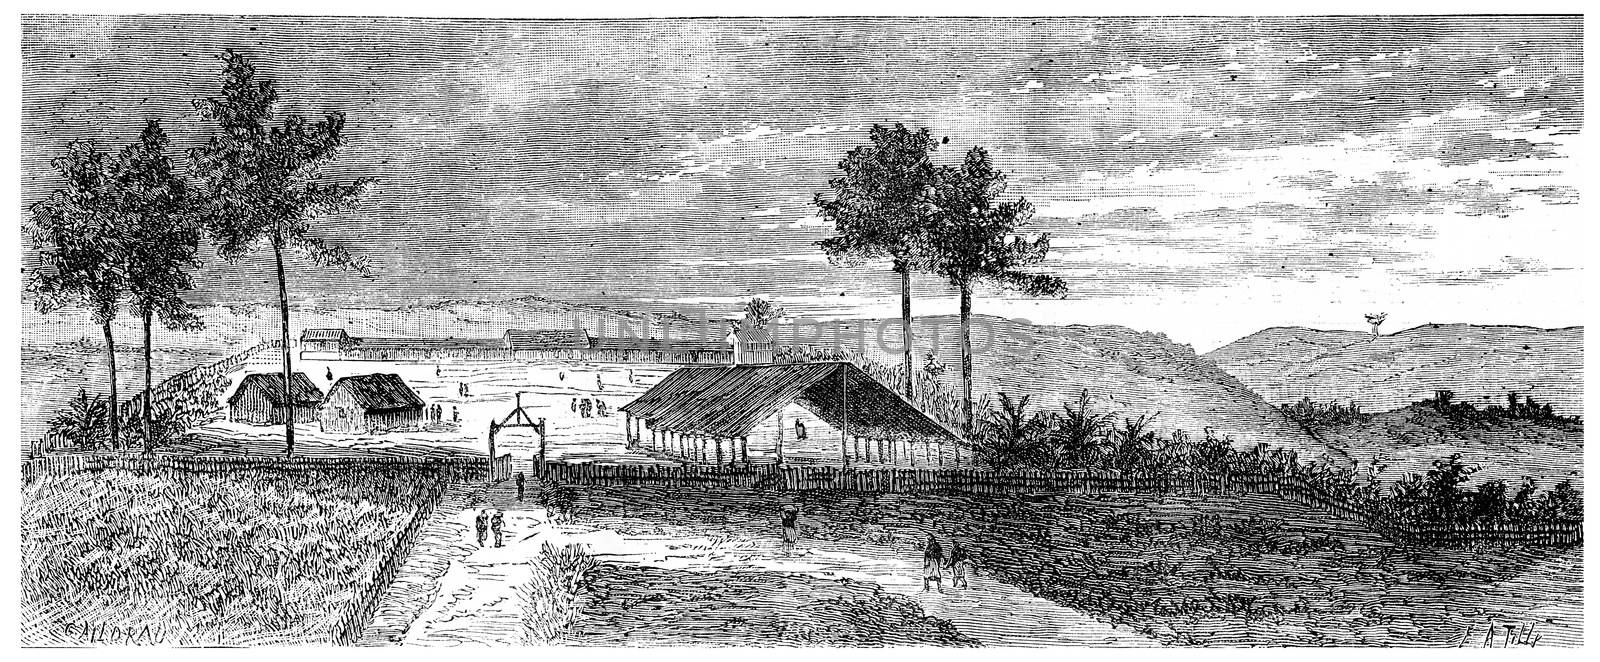 View of Franceville, vintage engraved illustration. Journal des Voyage, Travel Journal, (1880-81).